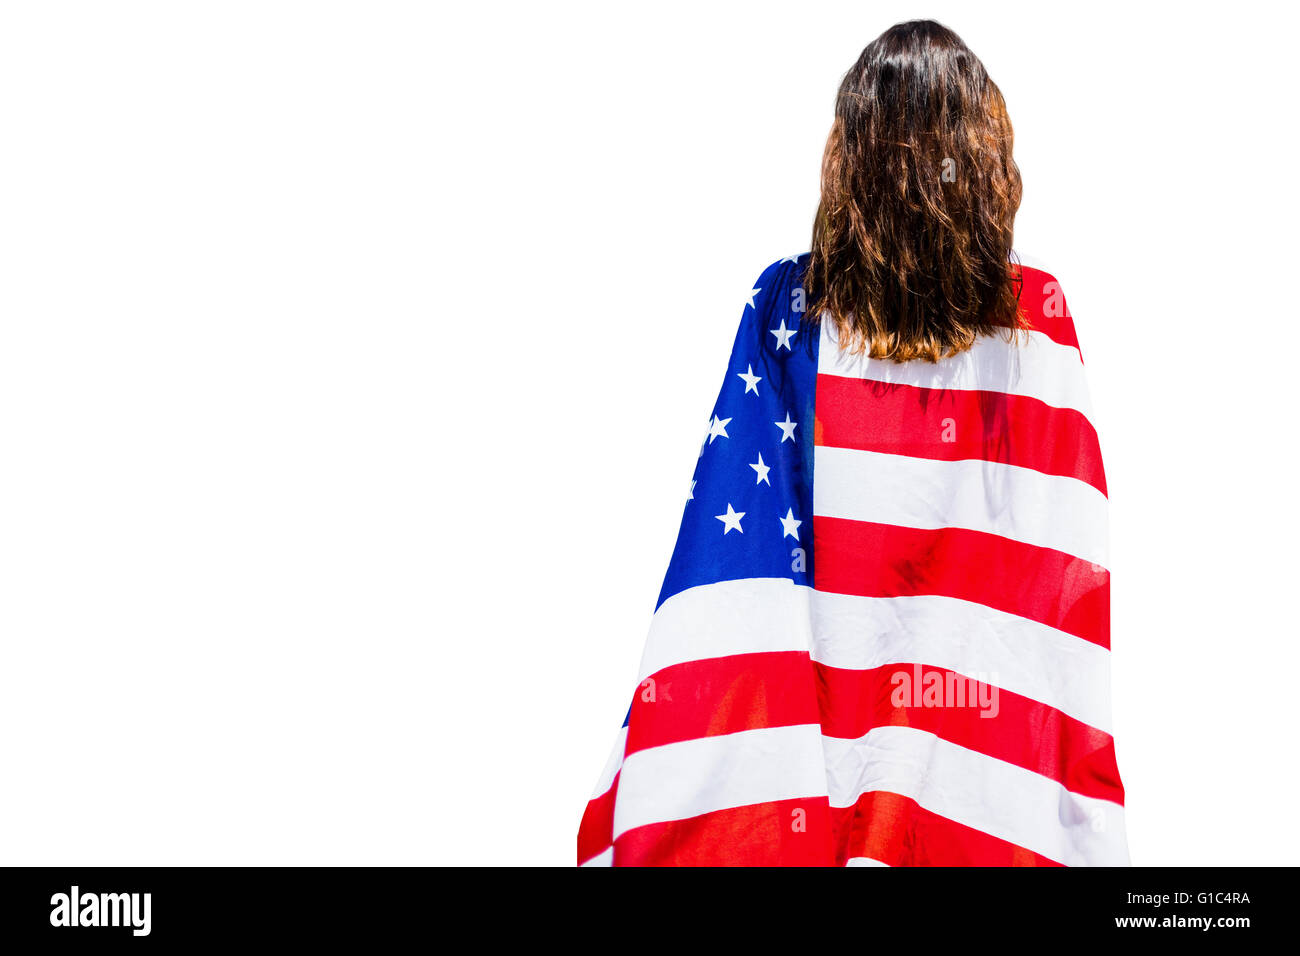 Vista trasera del deportivo de mujer sosteniendo una bandera americana Foto de stock